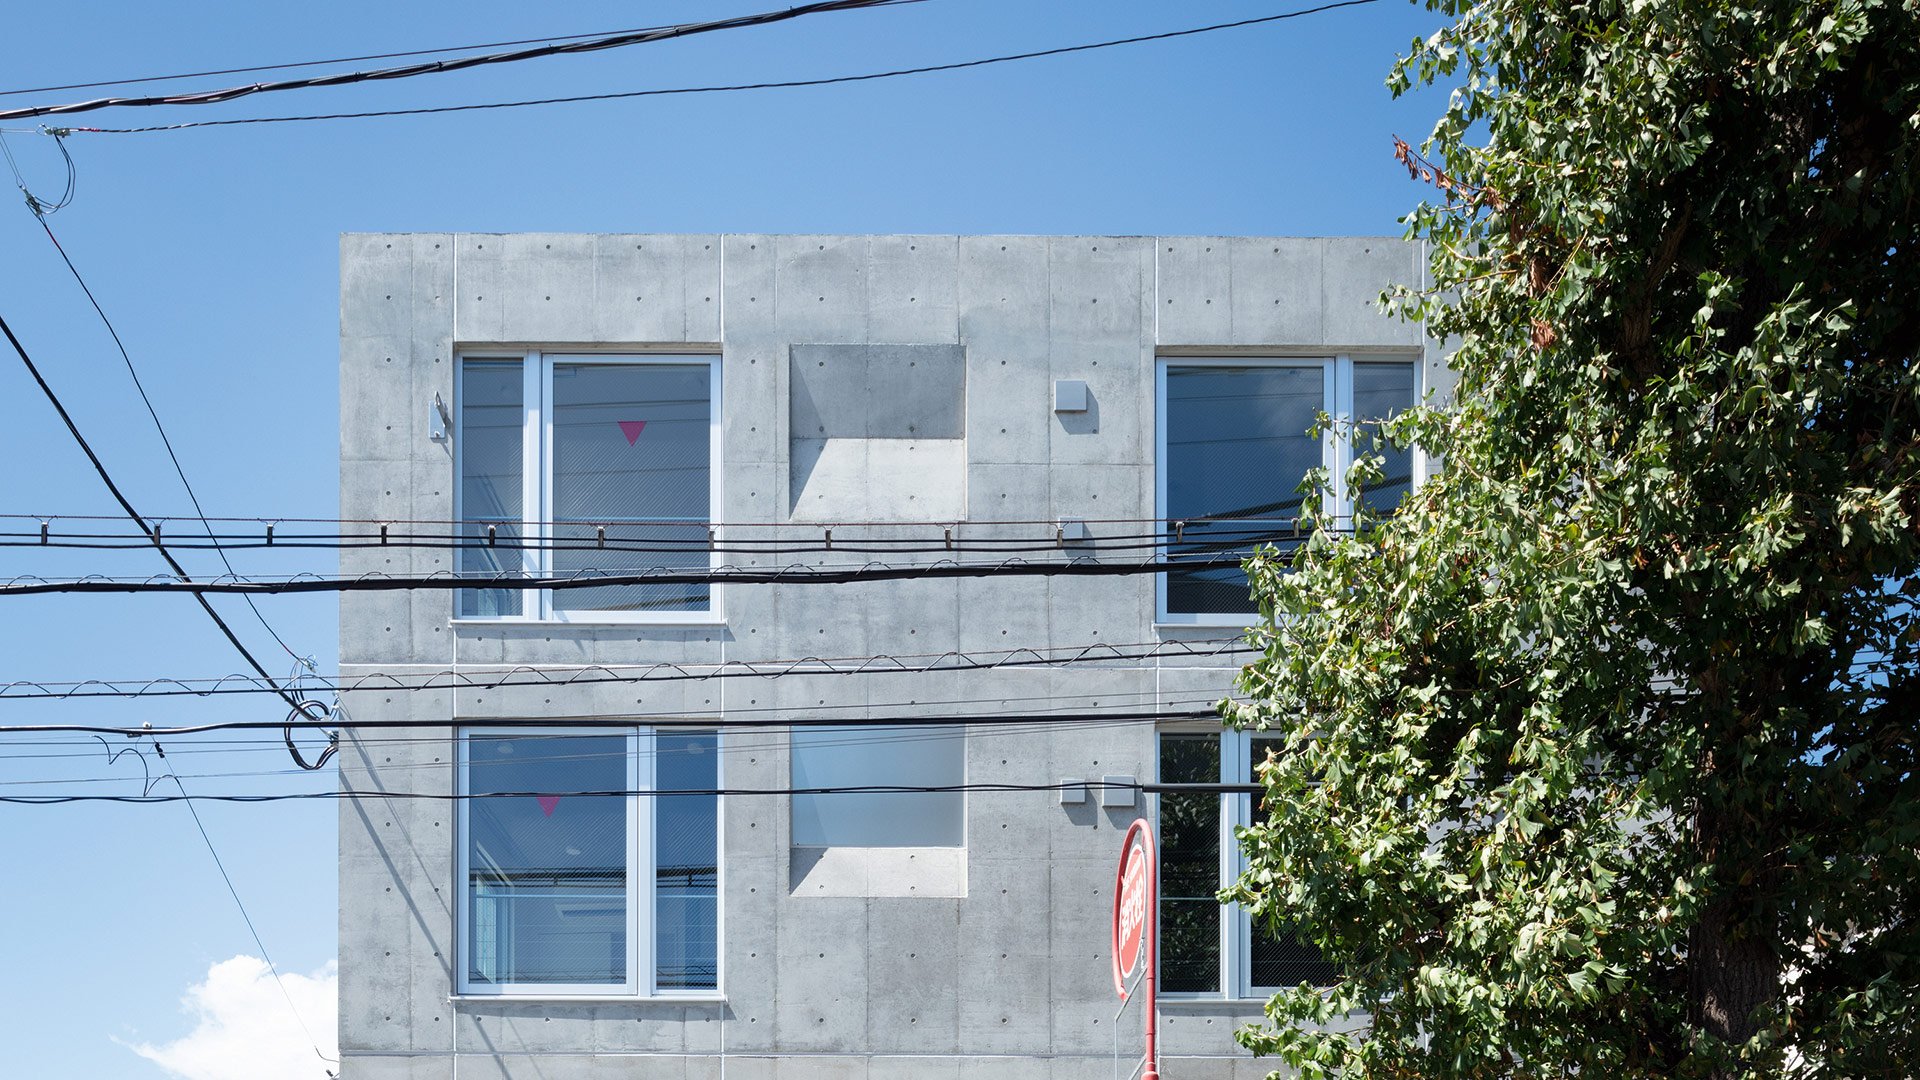 Das Wohnhaus »Escenario Todoroki« am Stadtrand von Tokio – von den Bewohnern schlicht und einfach »Concrete Box« genannt – ist ein besonders konsequentes Beispiel für den Einsatz von Beton im Wohnbereich. Architekt Ryuichi Sasaki schuf eine schlichte Kiste, wobei sich das Material bis über die Dachflächen nach oben zieht. Auffällig ist die Oberfläche: Die Anker- beziehungsweise Hüllrohr-löcher, die im Schalungsprozess entstehen, verleihen dem Haus eine futuristische Chesterfield-Optik. sasaki-architecture.com